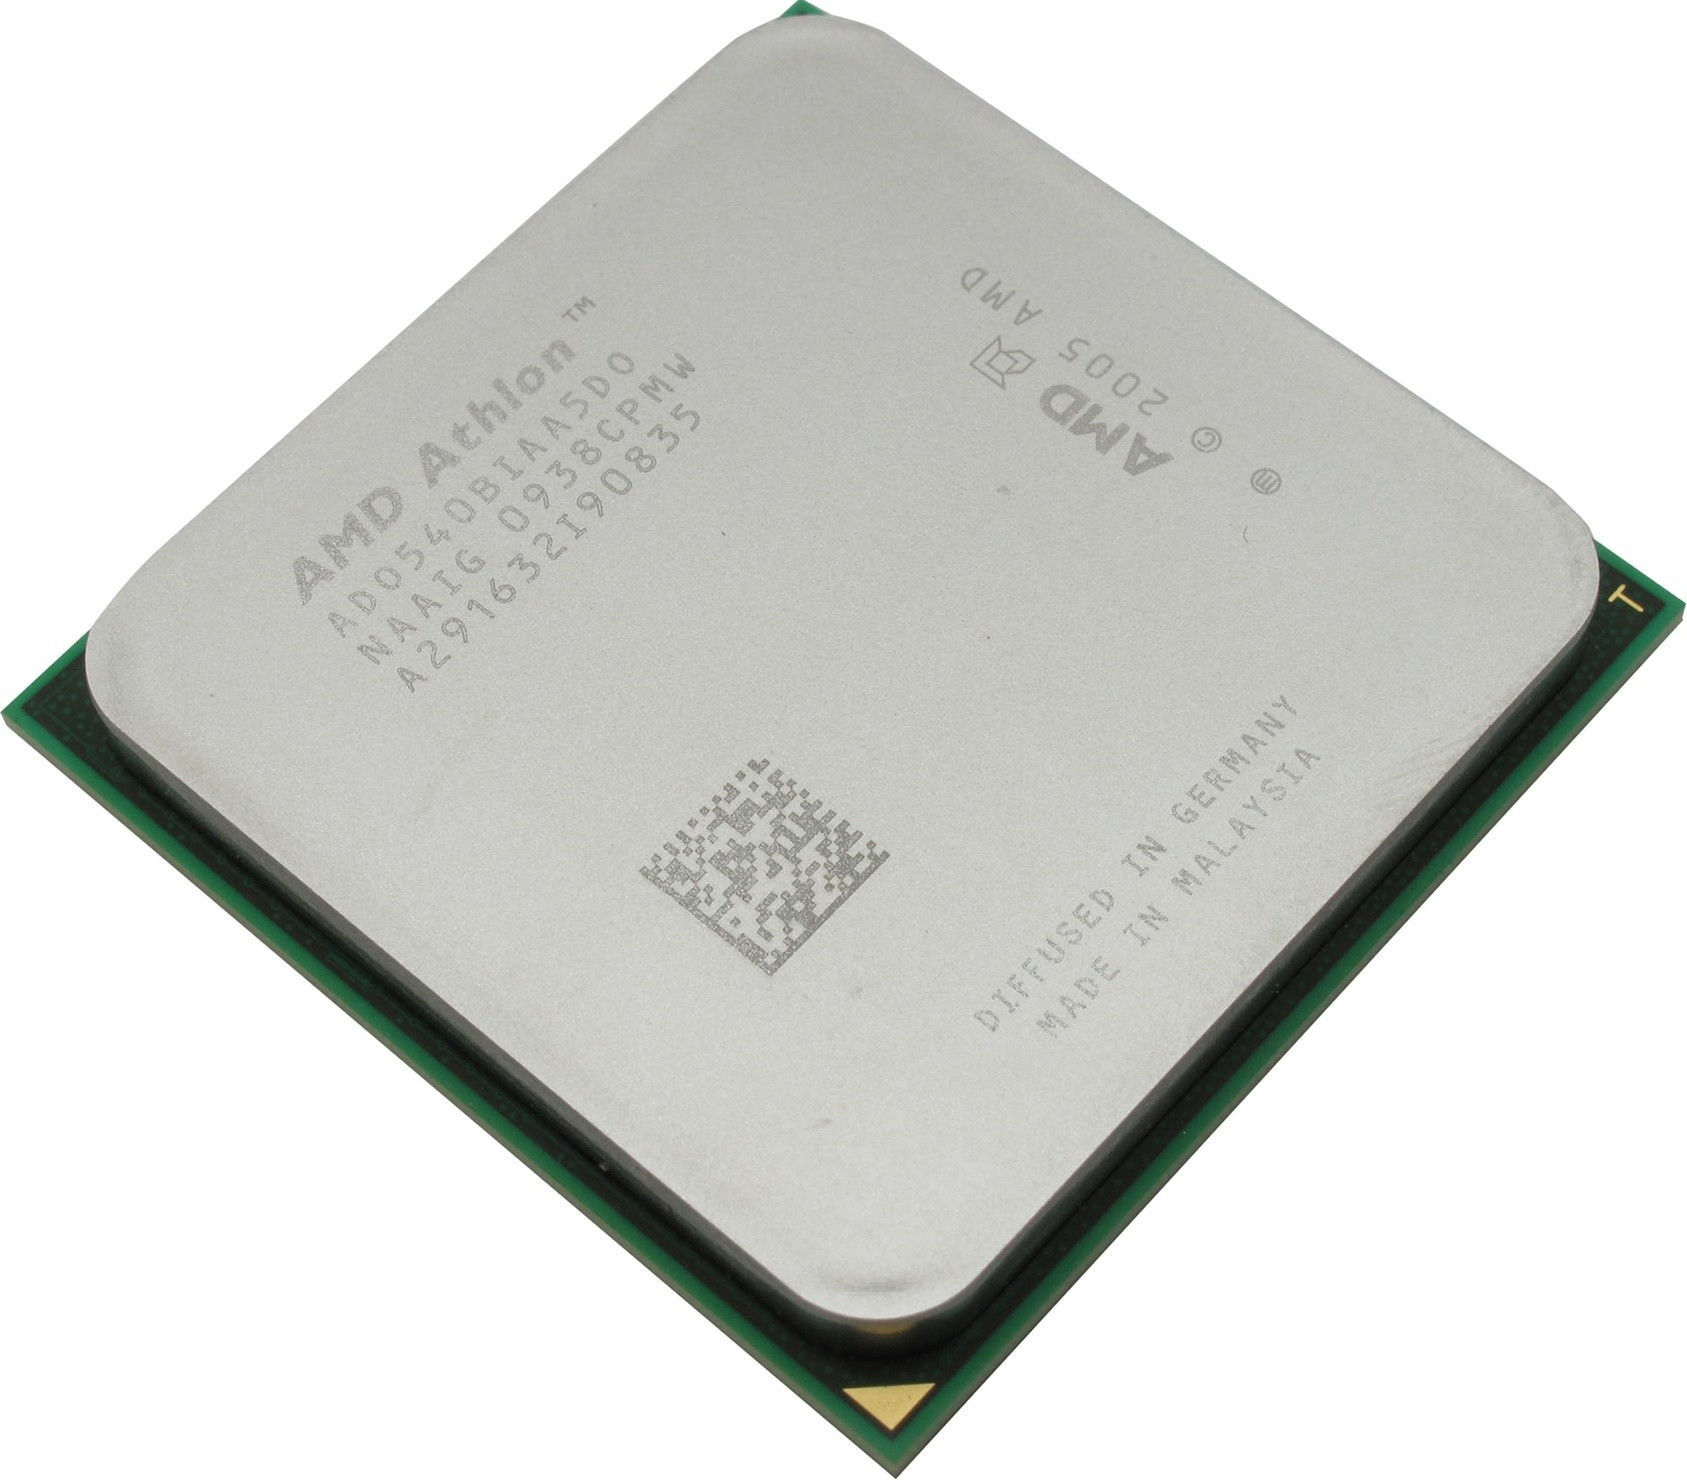 Amd x6 1075t. AMD Phenom II x6 1075t. Процессор AMD Phenom II x6 Thuban 1075t. Sempron x2 2300 (g2). AMD Phenom(TM) II x6 1075t Processor 3.00 GHZ.